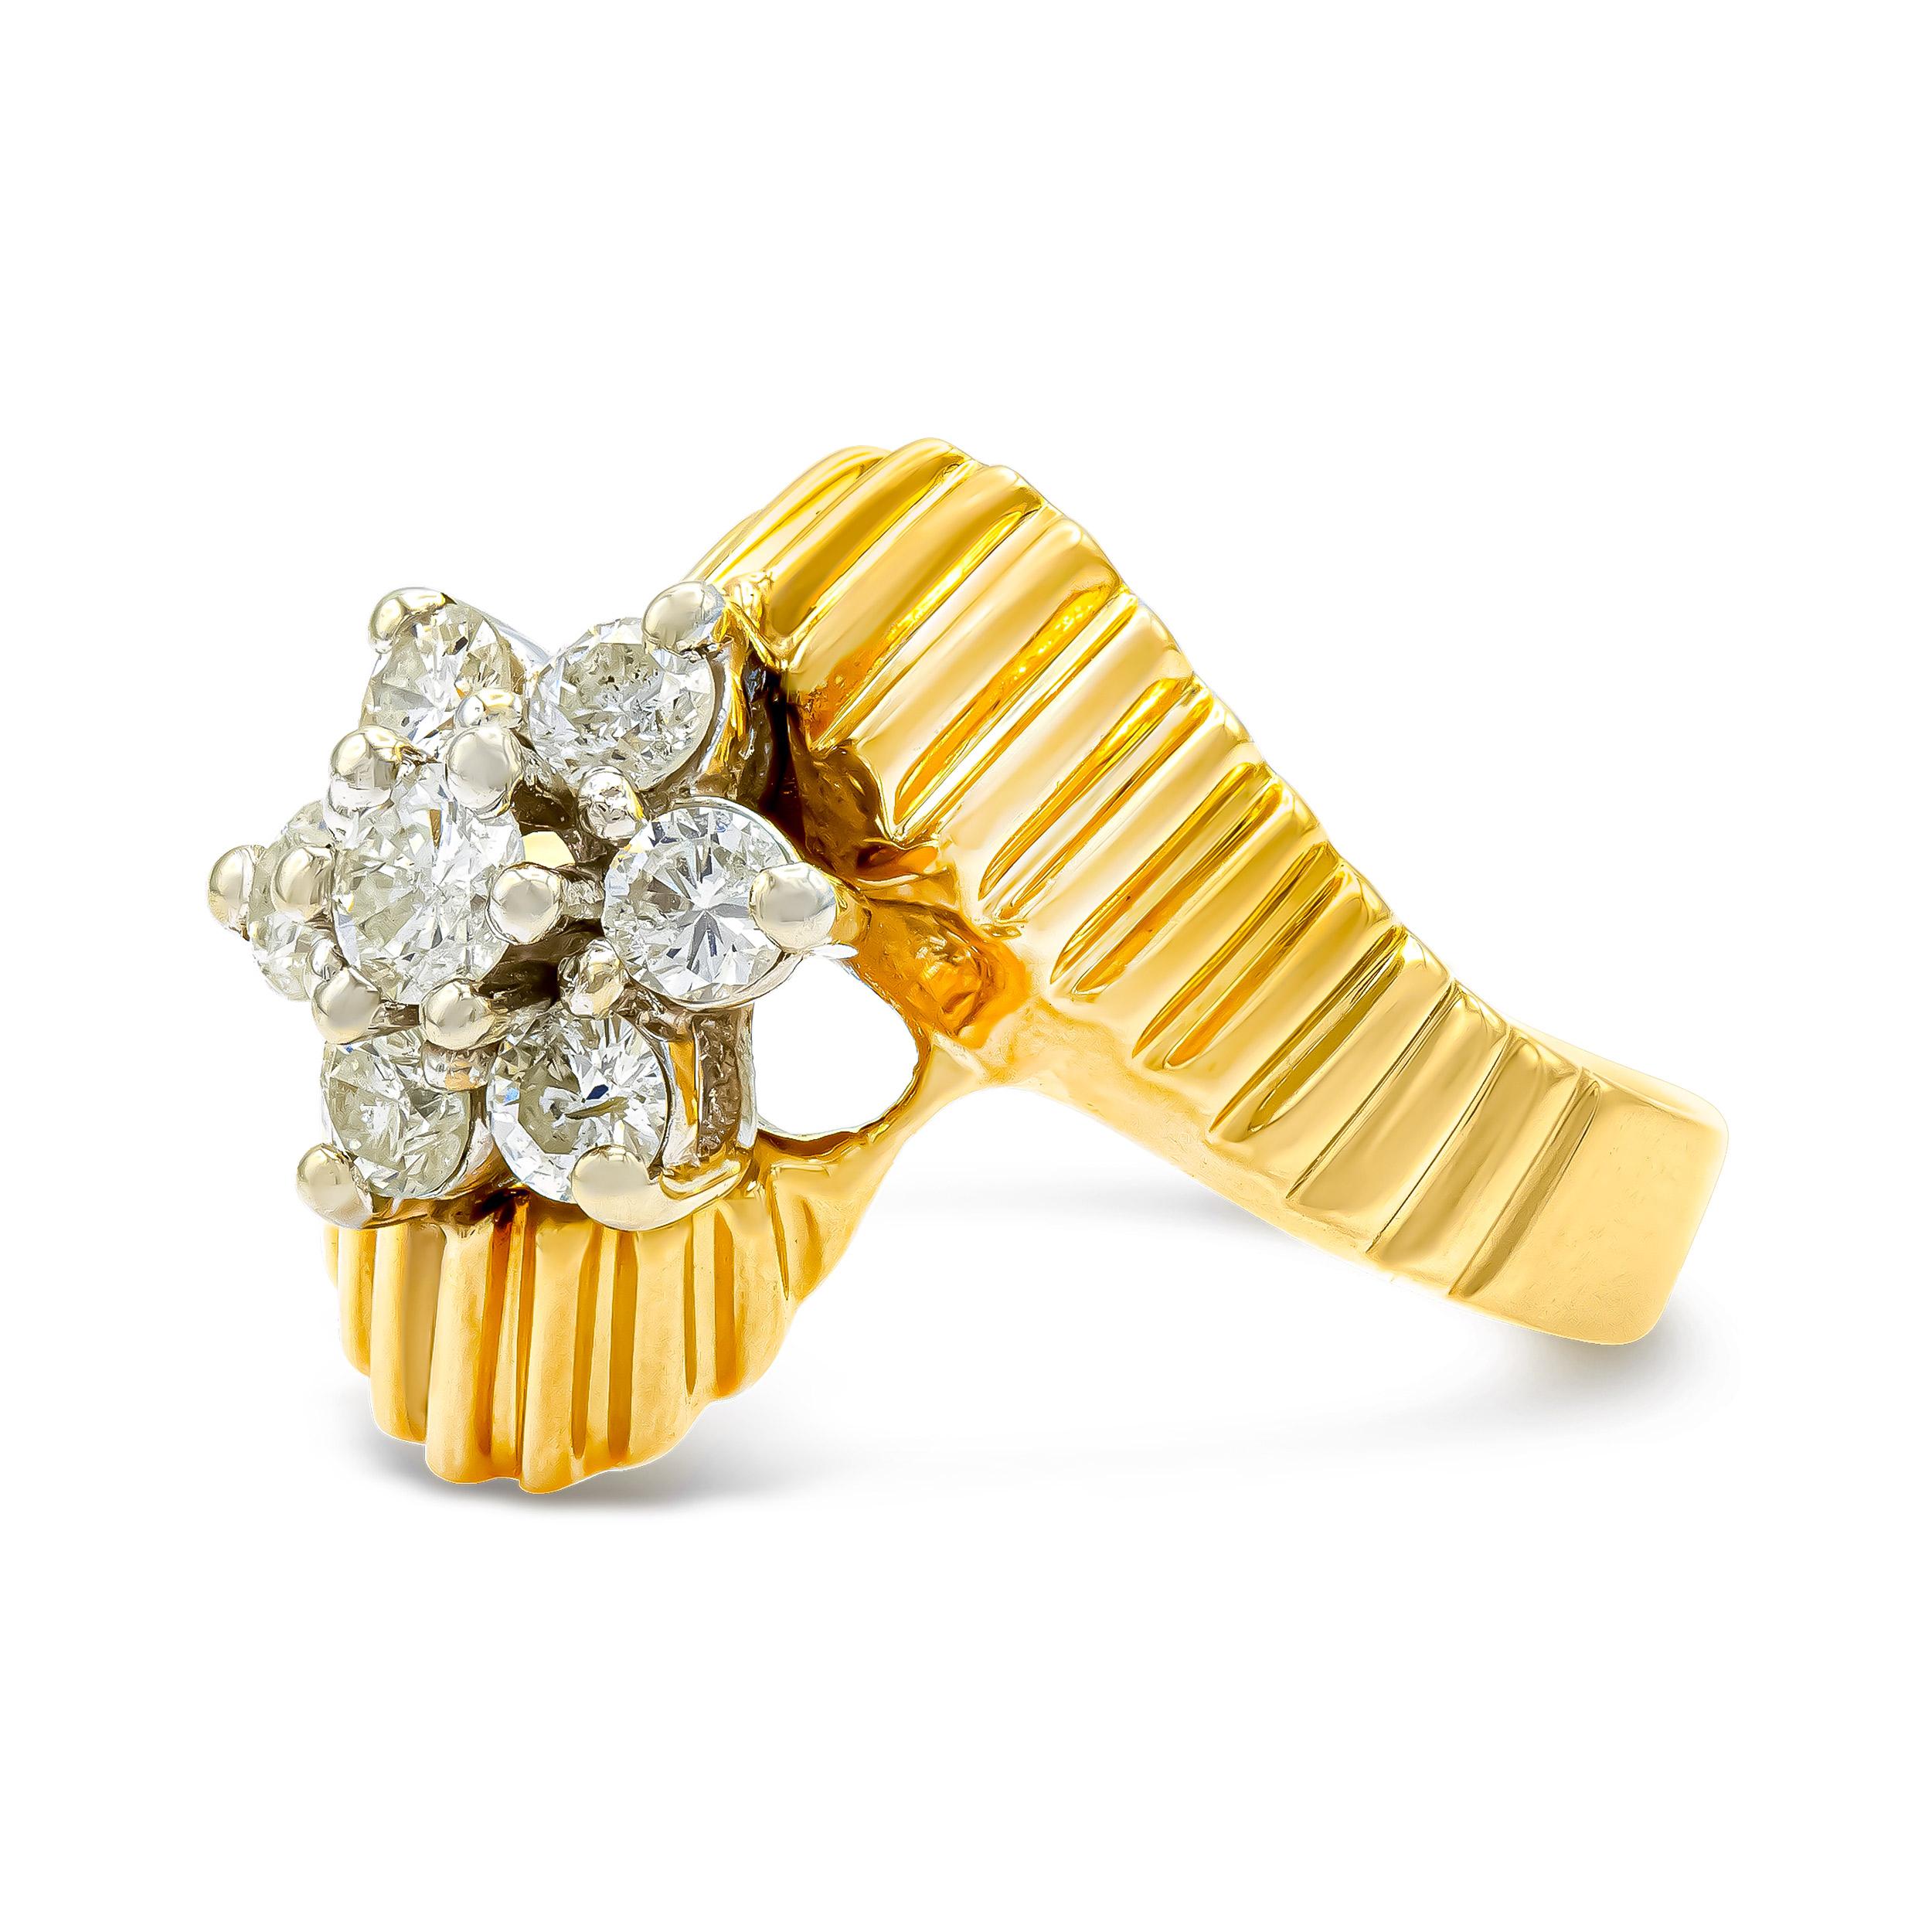 Cet anneau de dérivation en or plissé, associé à une grappe de diamants taillés en brillant de transition, constitue une déclaration majeure. Le motif floral est fantaisiste, charmant et idéal pour une utilisation quotidienne.

Détails du diamant